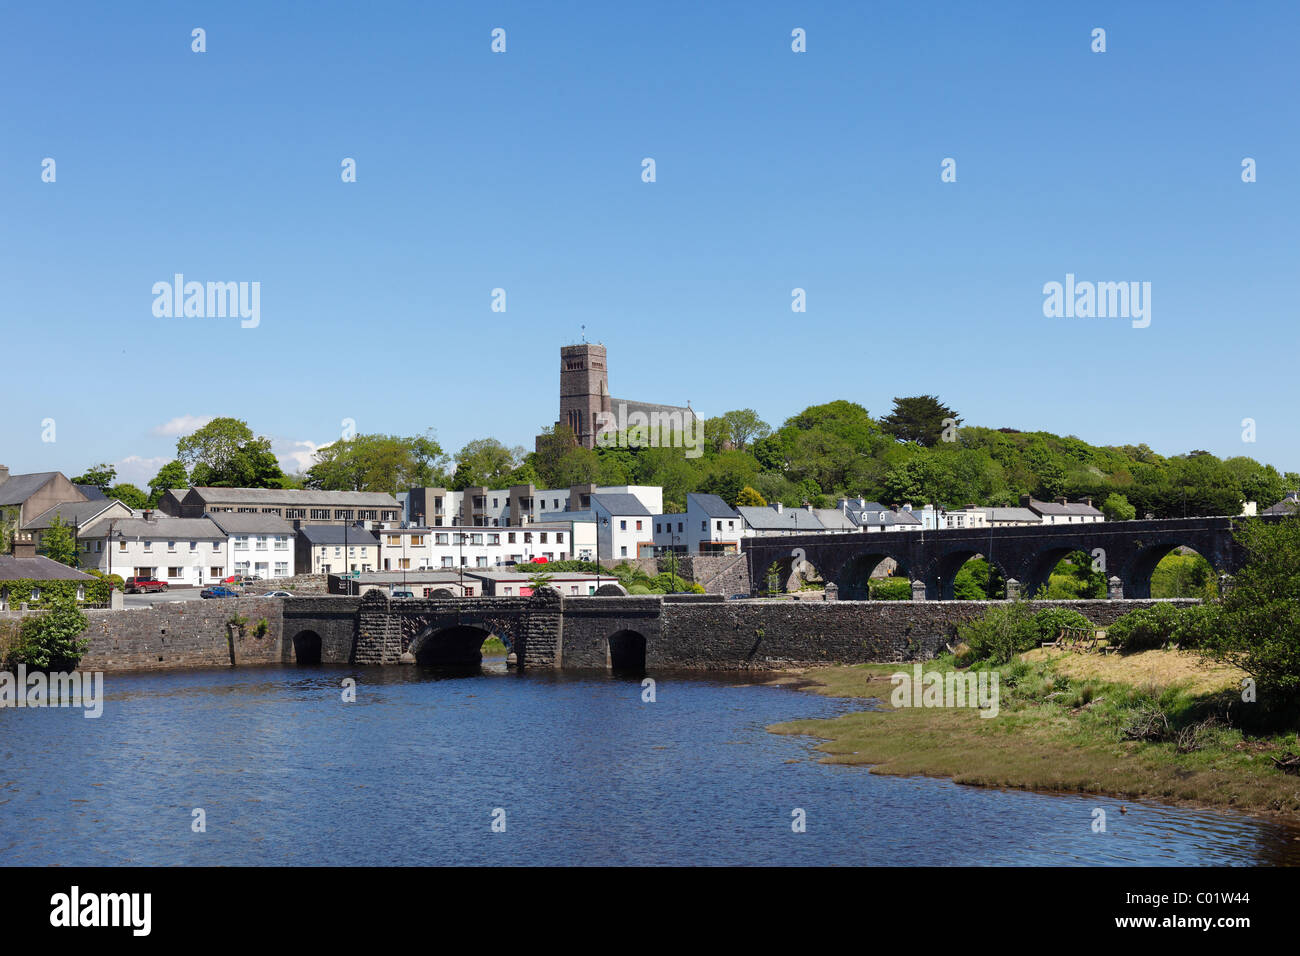 Los puentes que cruzan el río, Newport Newport, en el condado de Mayo, Provincia de Connacht, República de Irlanda, Europa Foto de stock